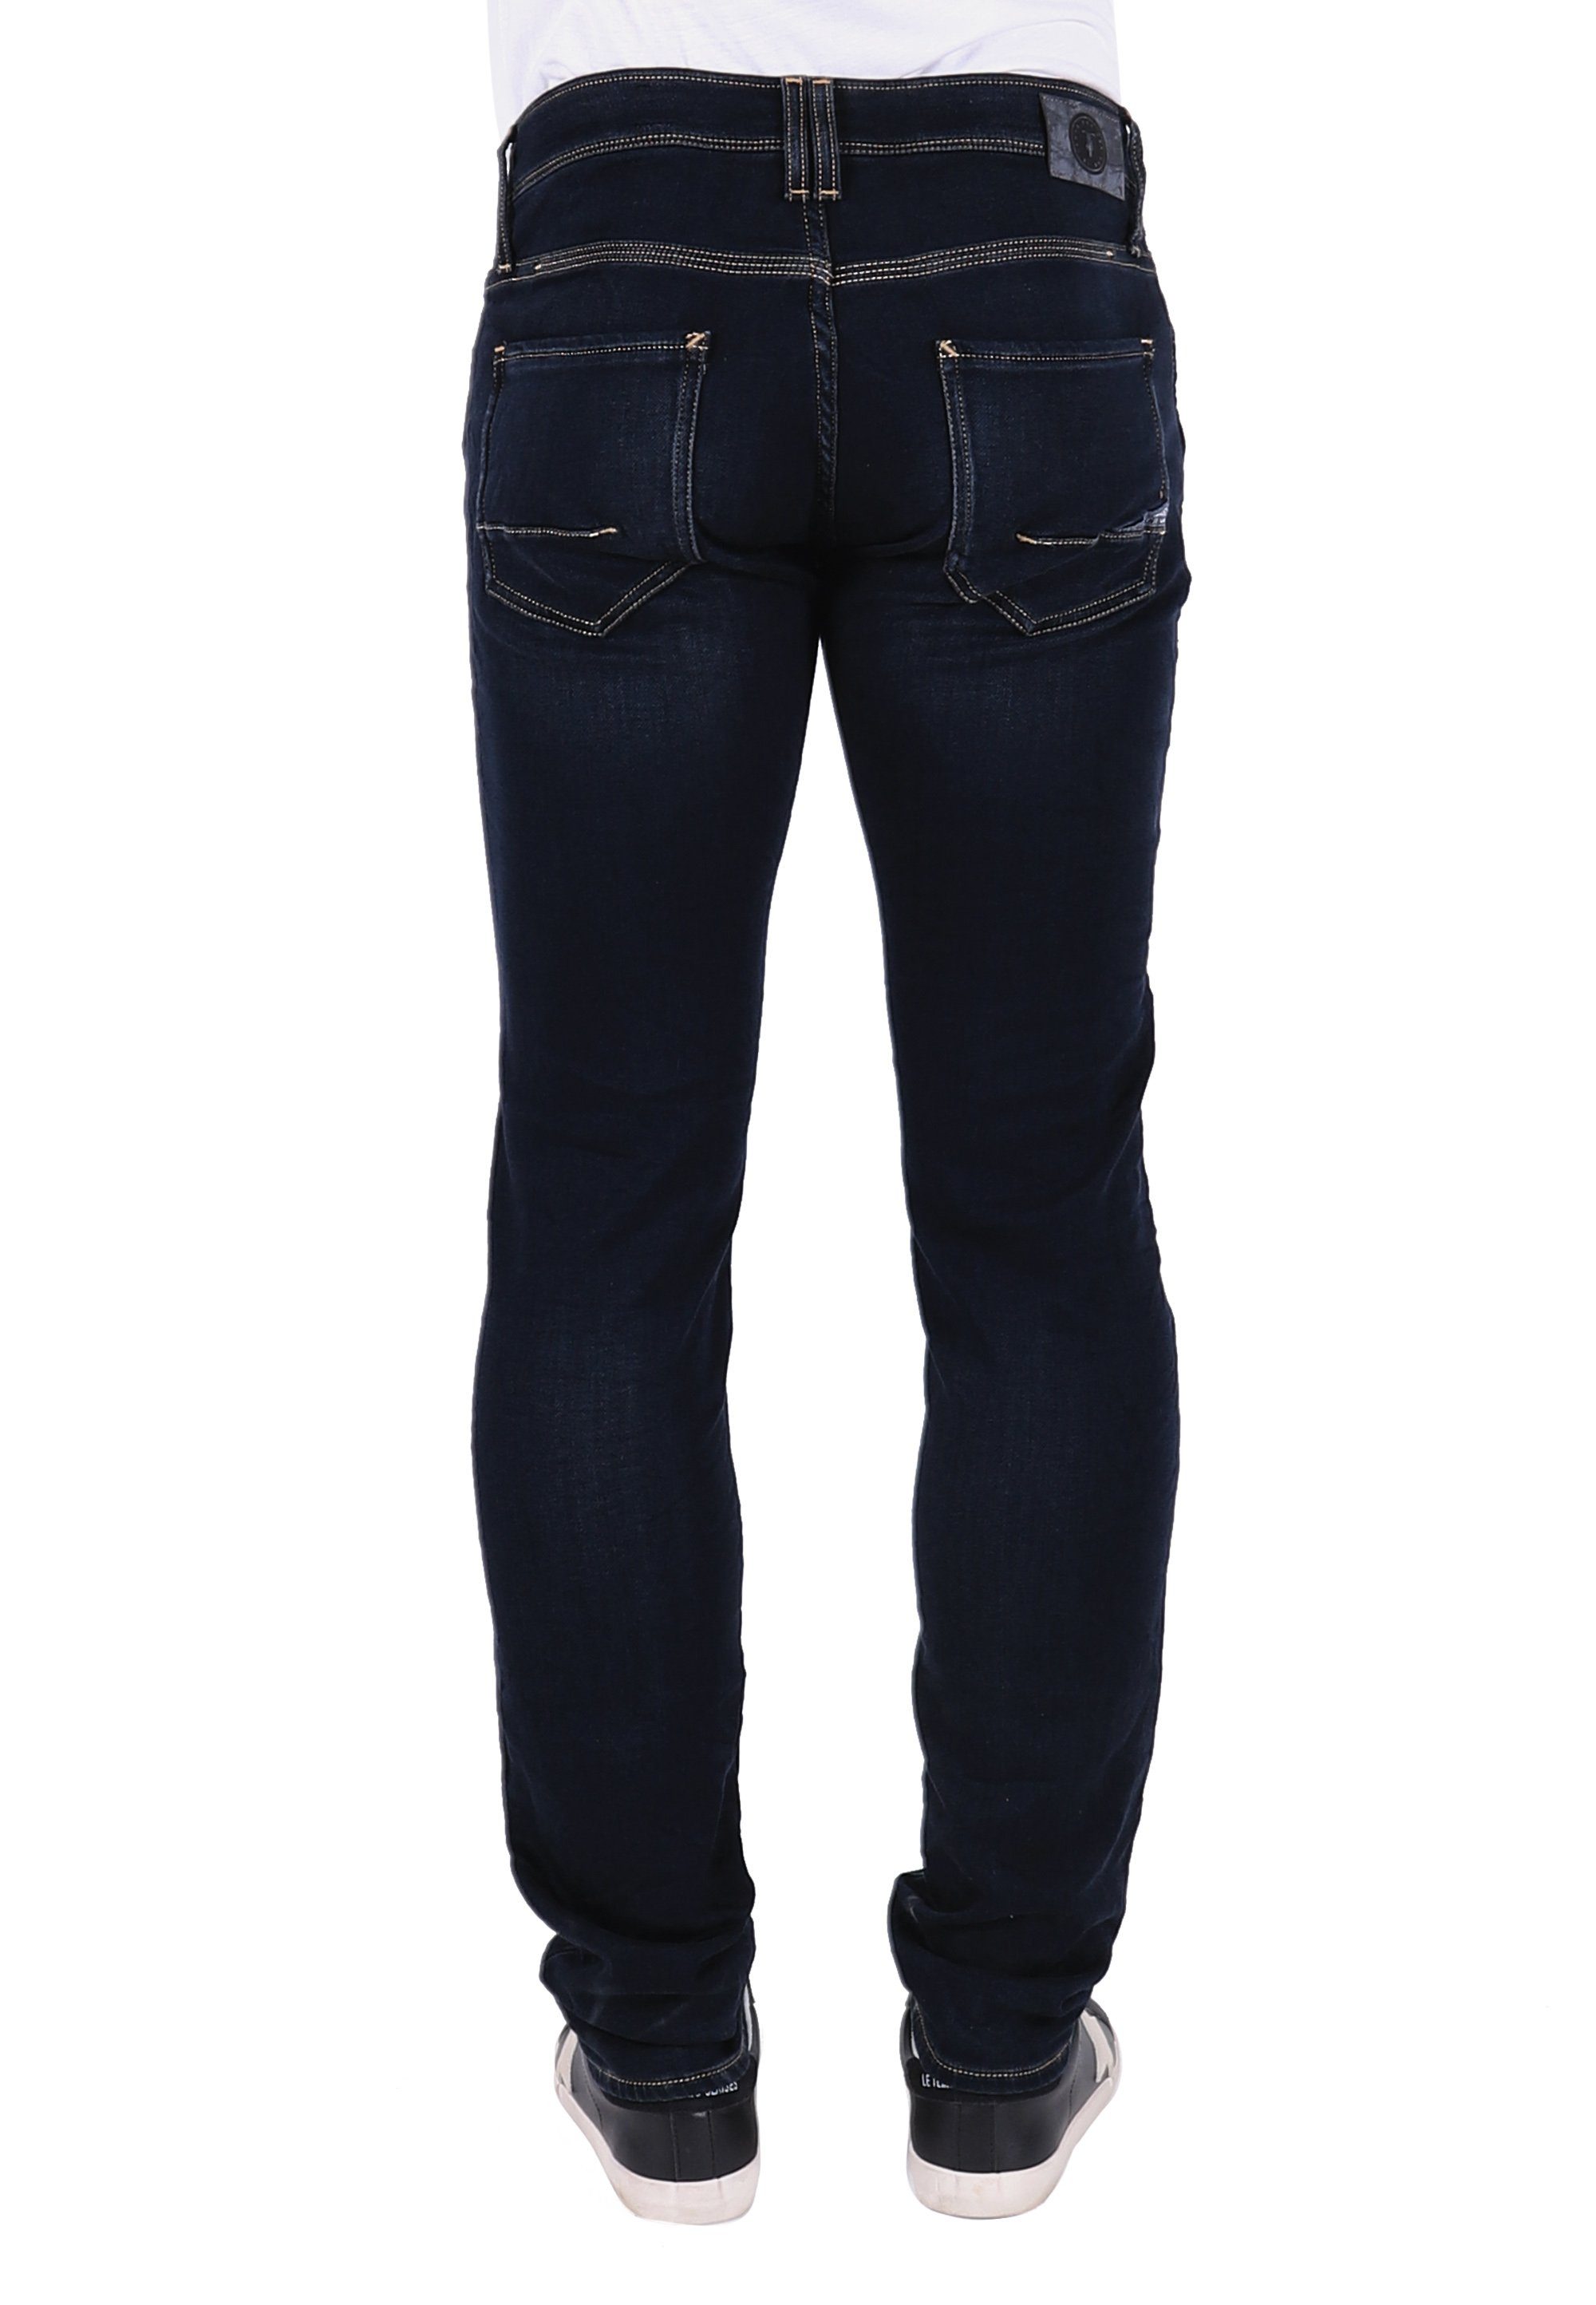 Le Temps Des Cerises in Slim-fit-Jeans 5-Pockt-Design trendigem